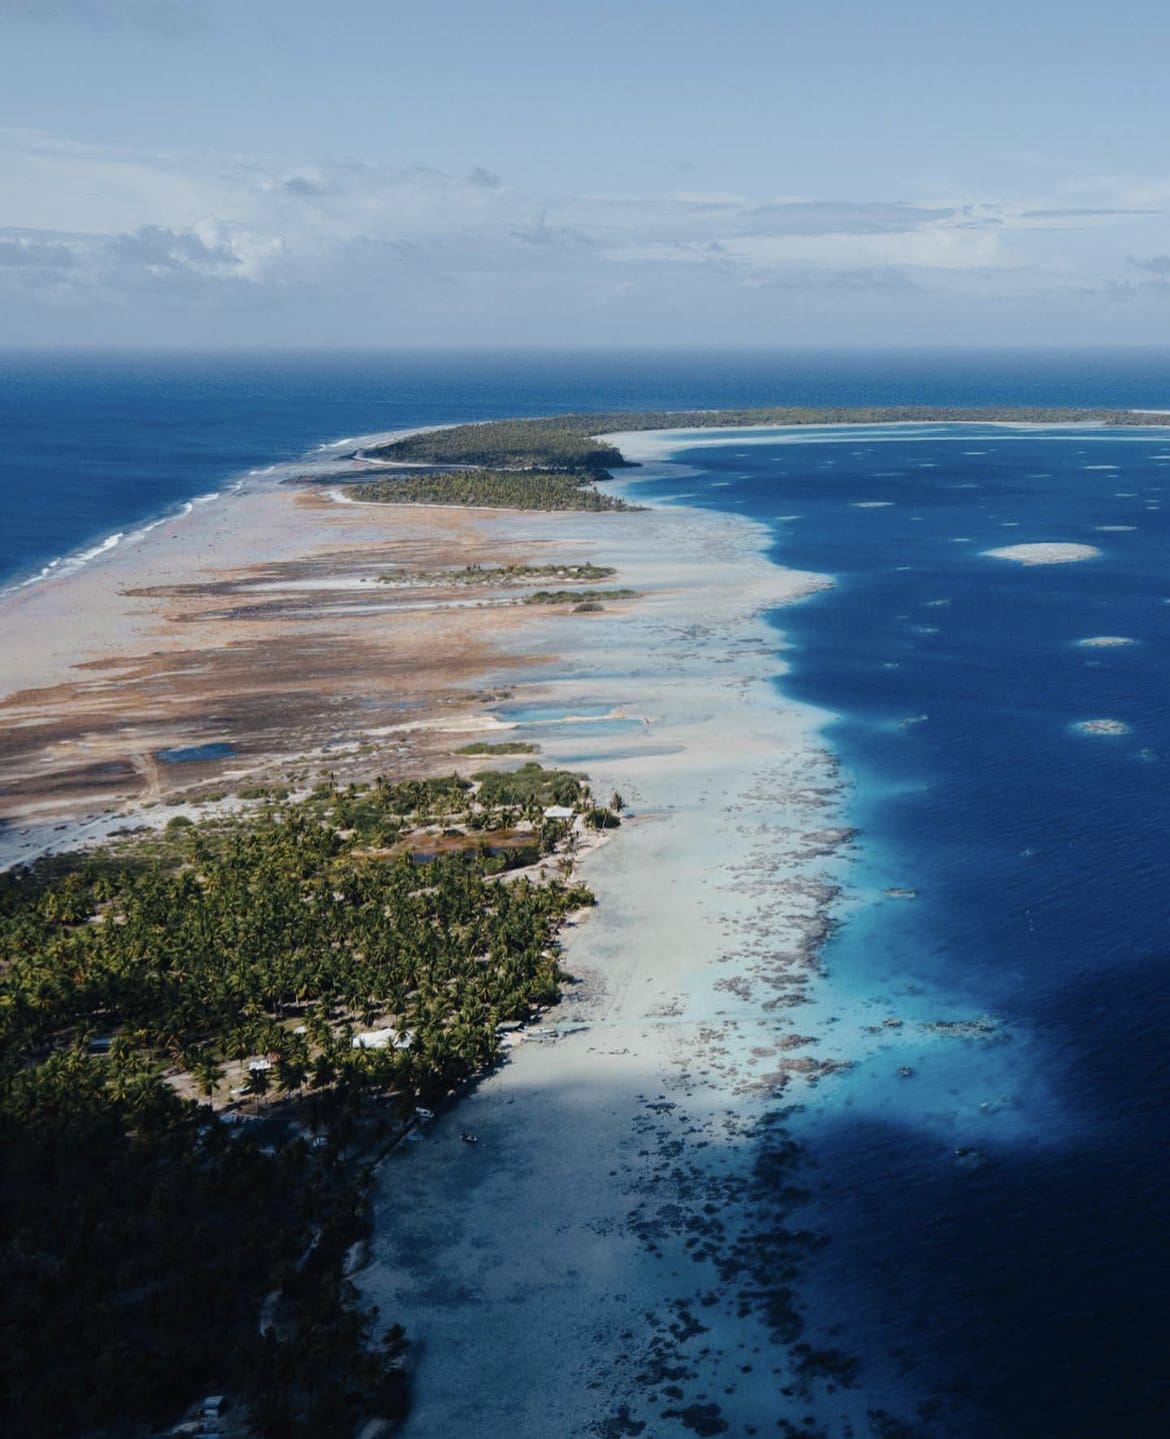 The Tuamotu Archipelago